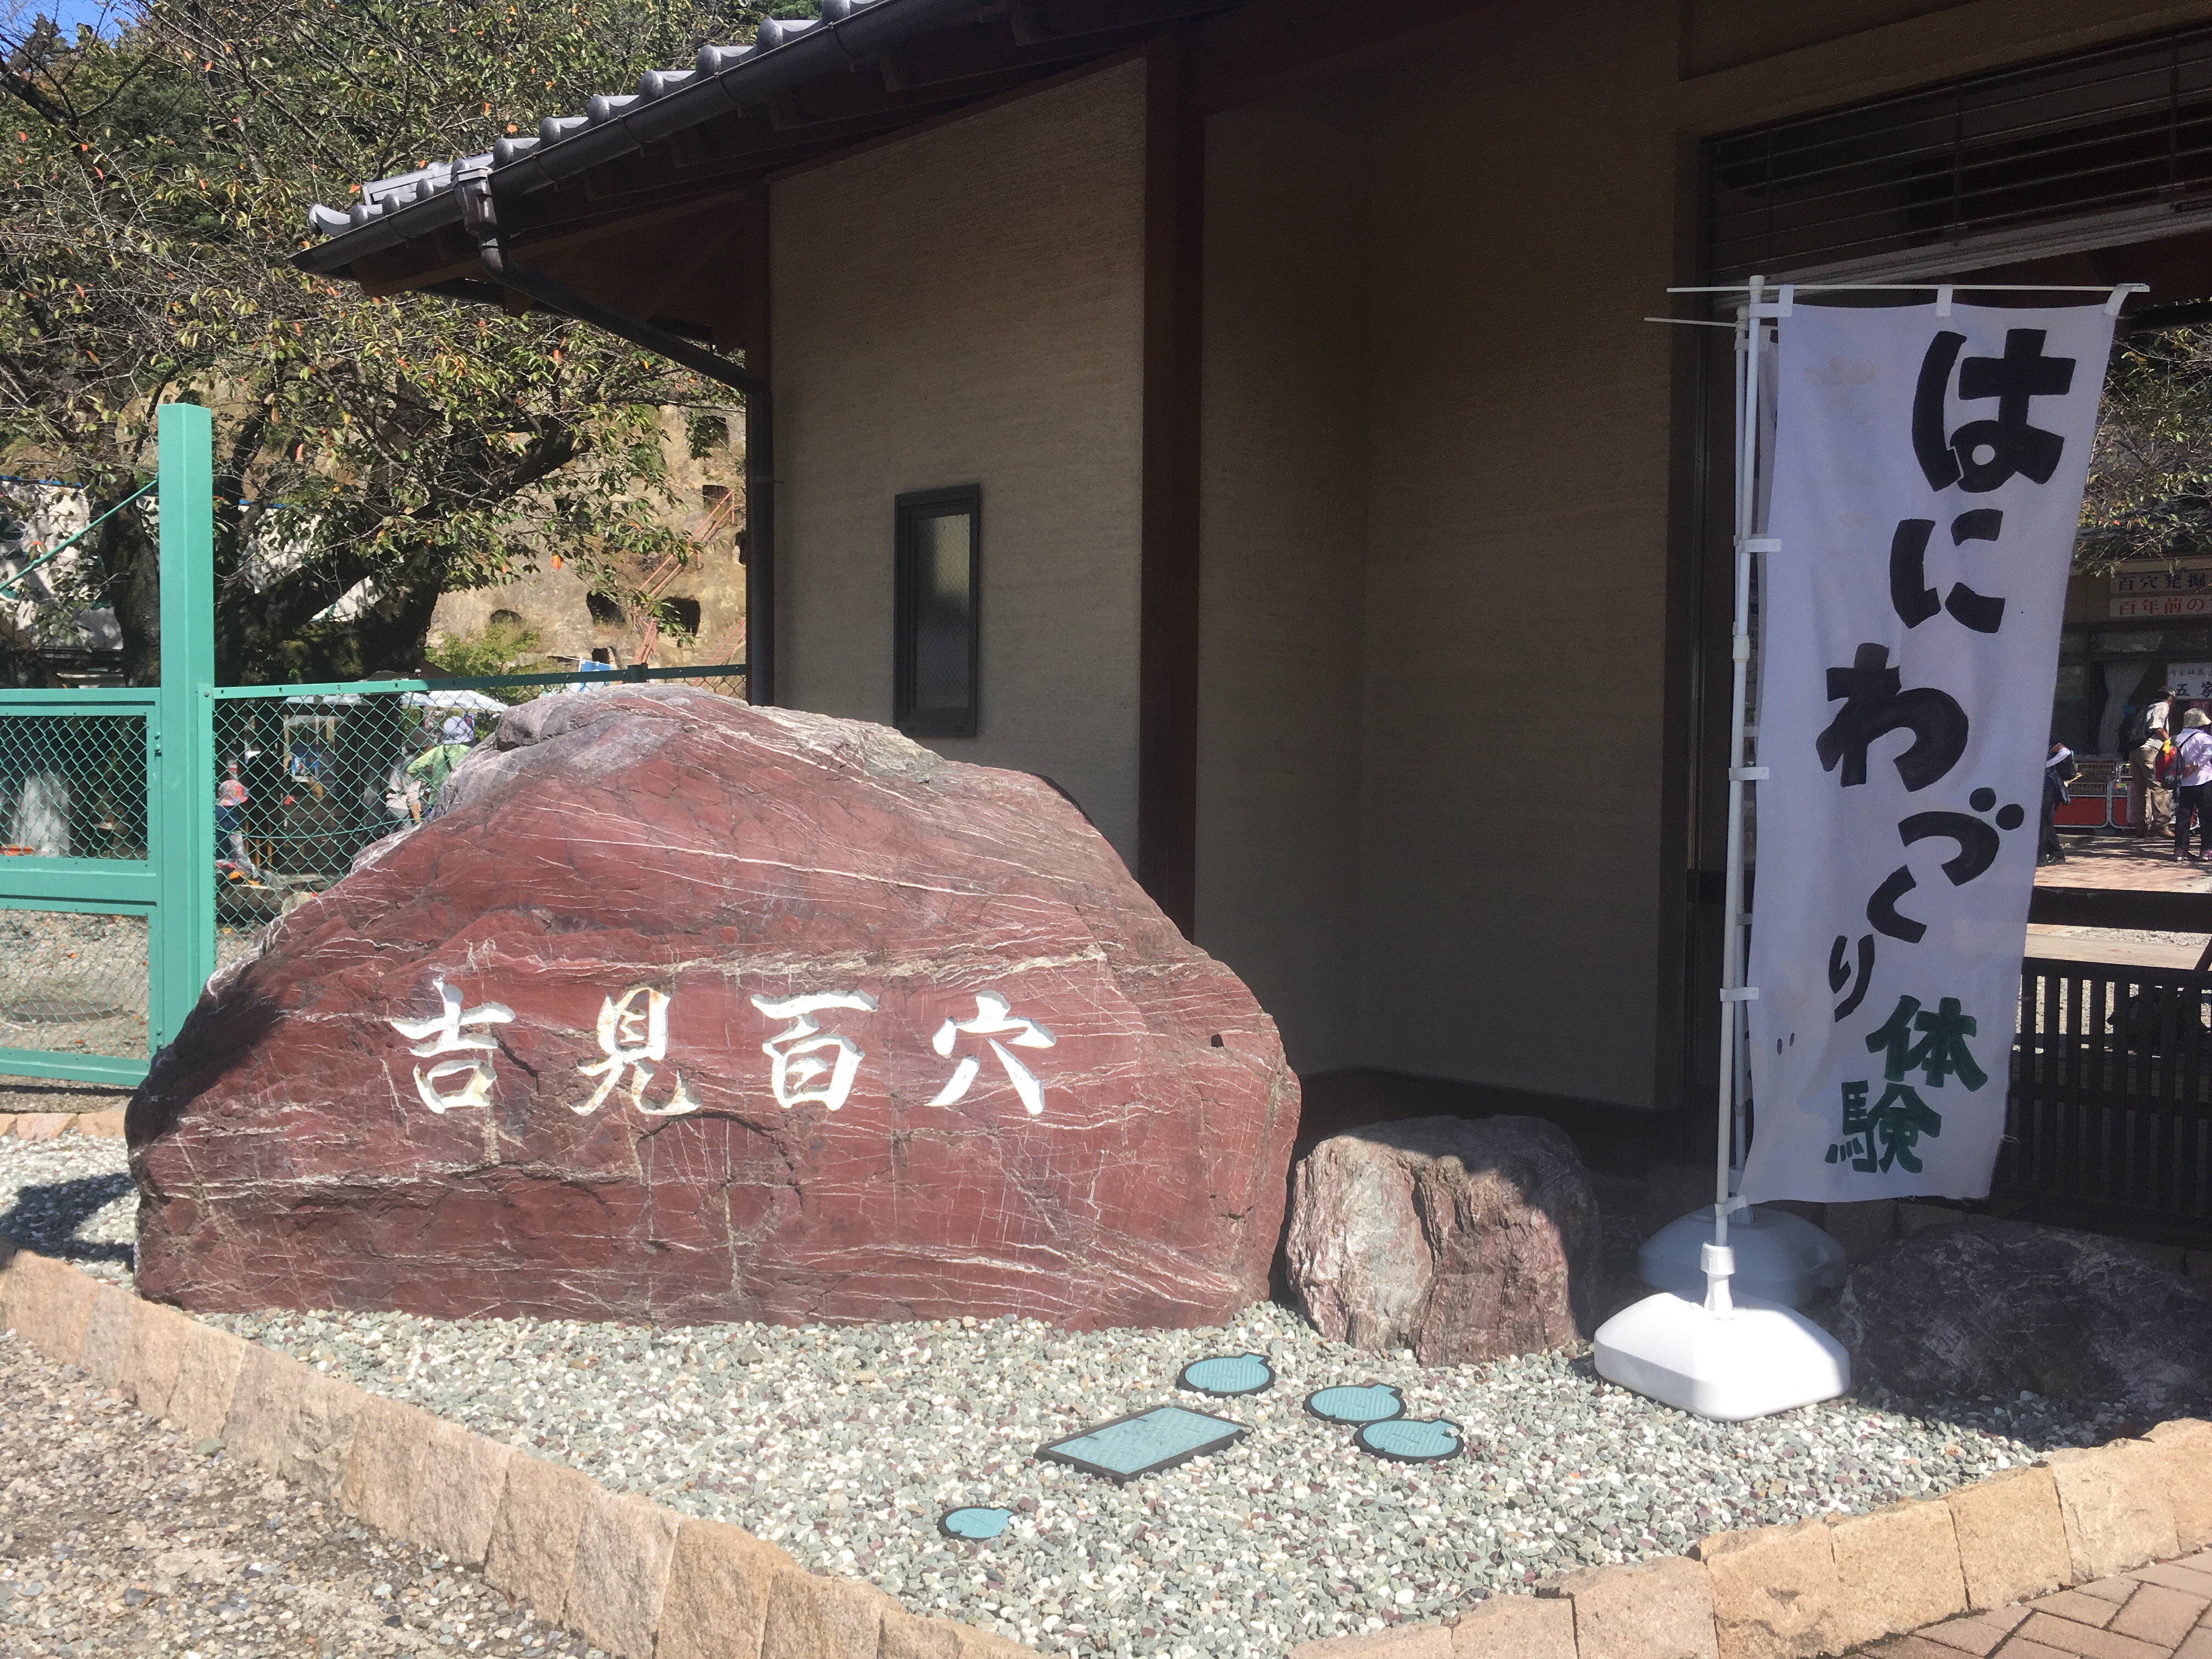 埼玉のカッパドキアと言われる日本有数の史跡「吉見百穴」に行ってみた。